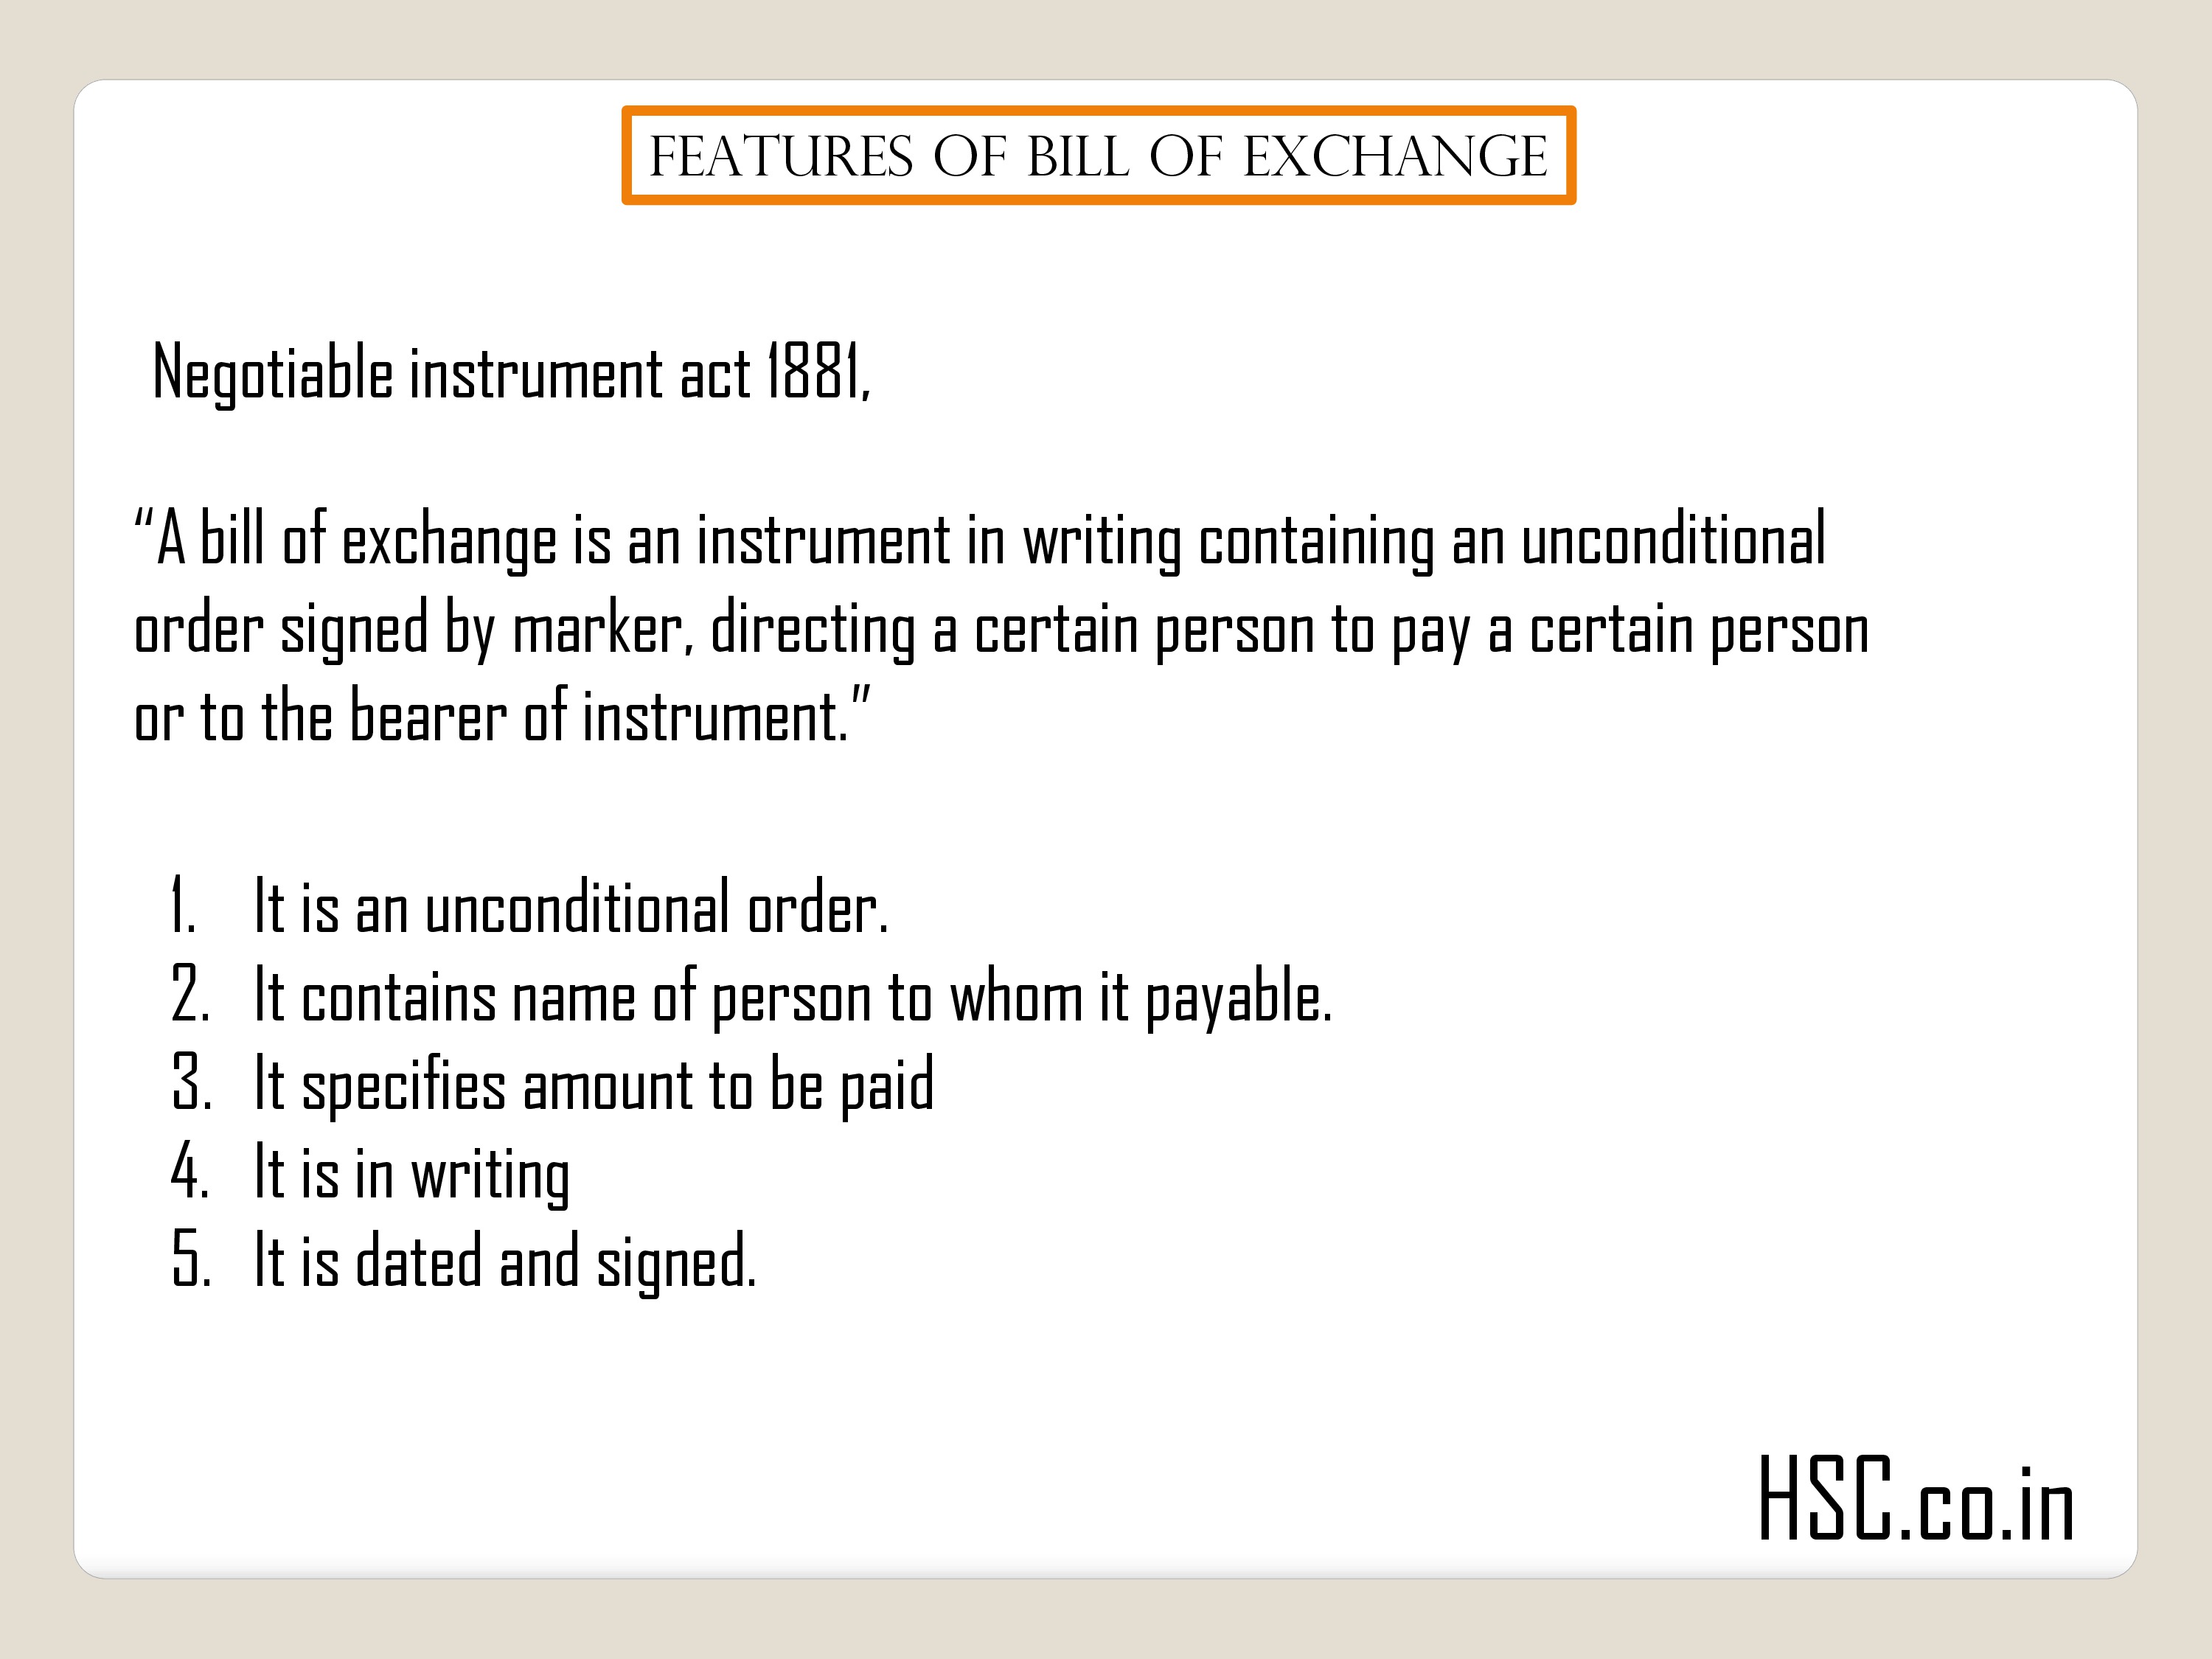 Features of Bill of exchange